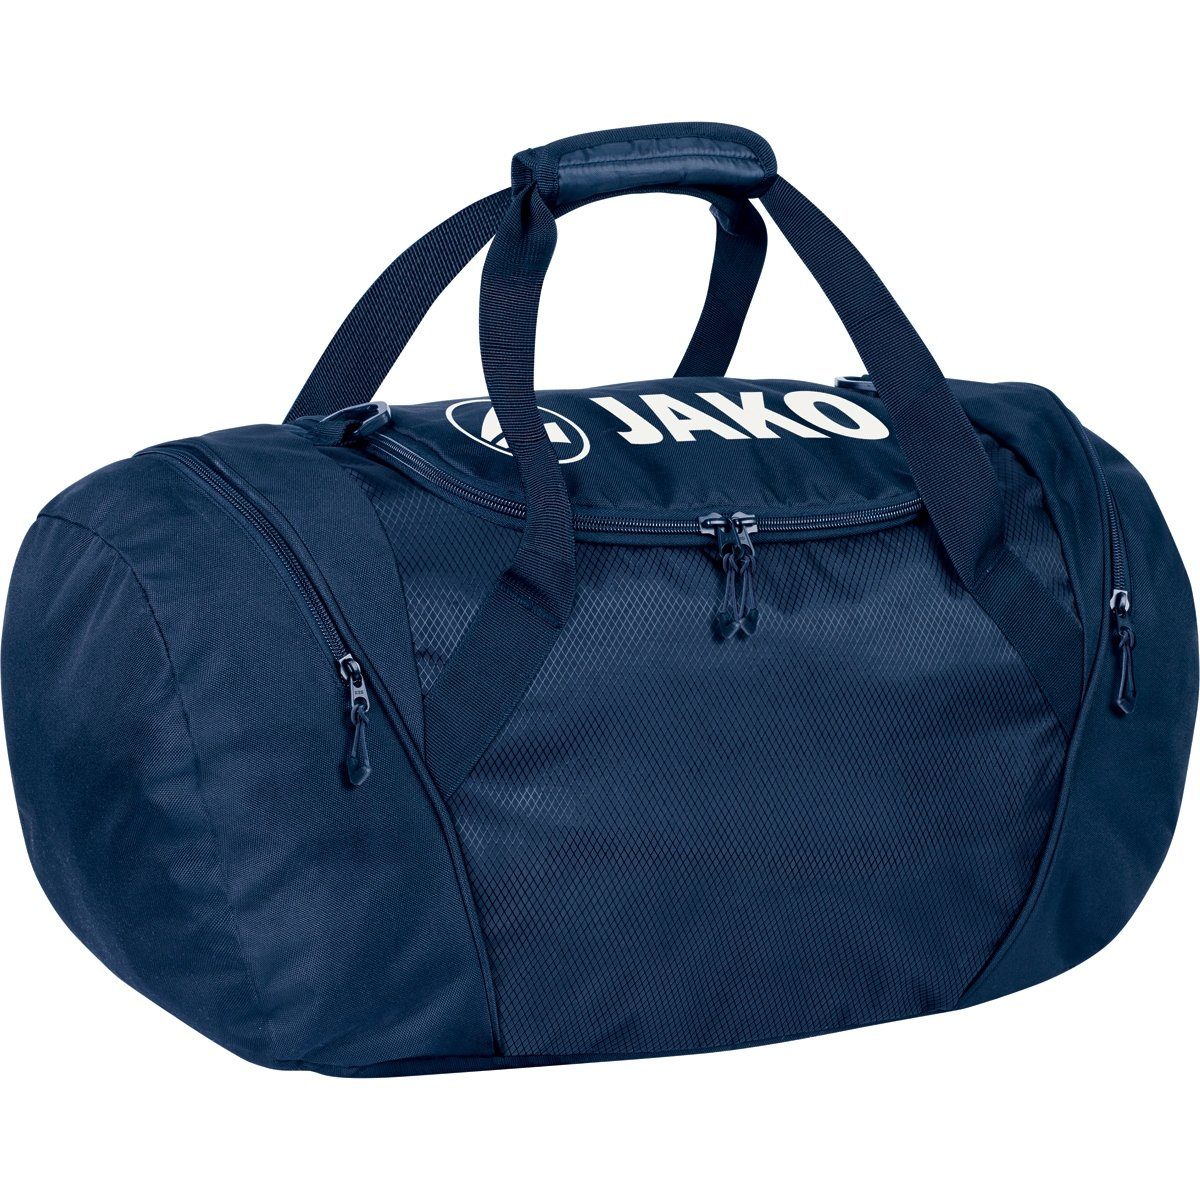 Jako Sporttasche Rucksack und Sporttasche in One - 1989 09 marine (Größe: L) blau